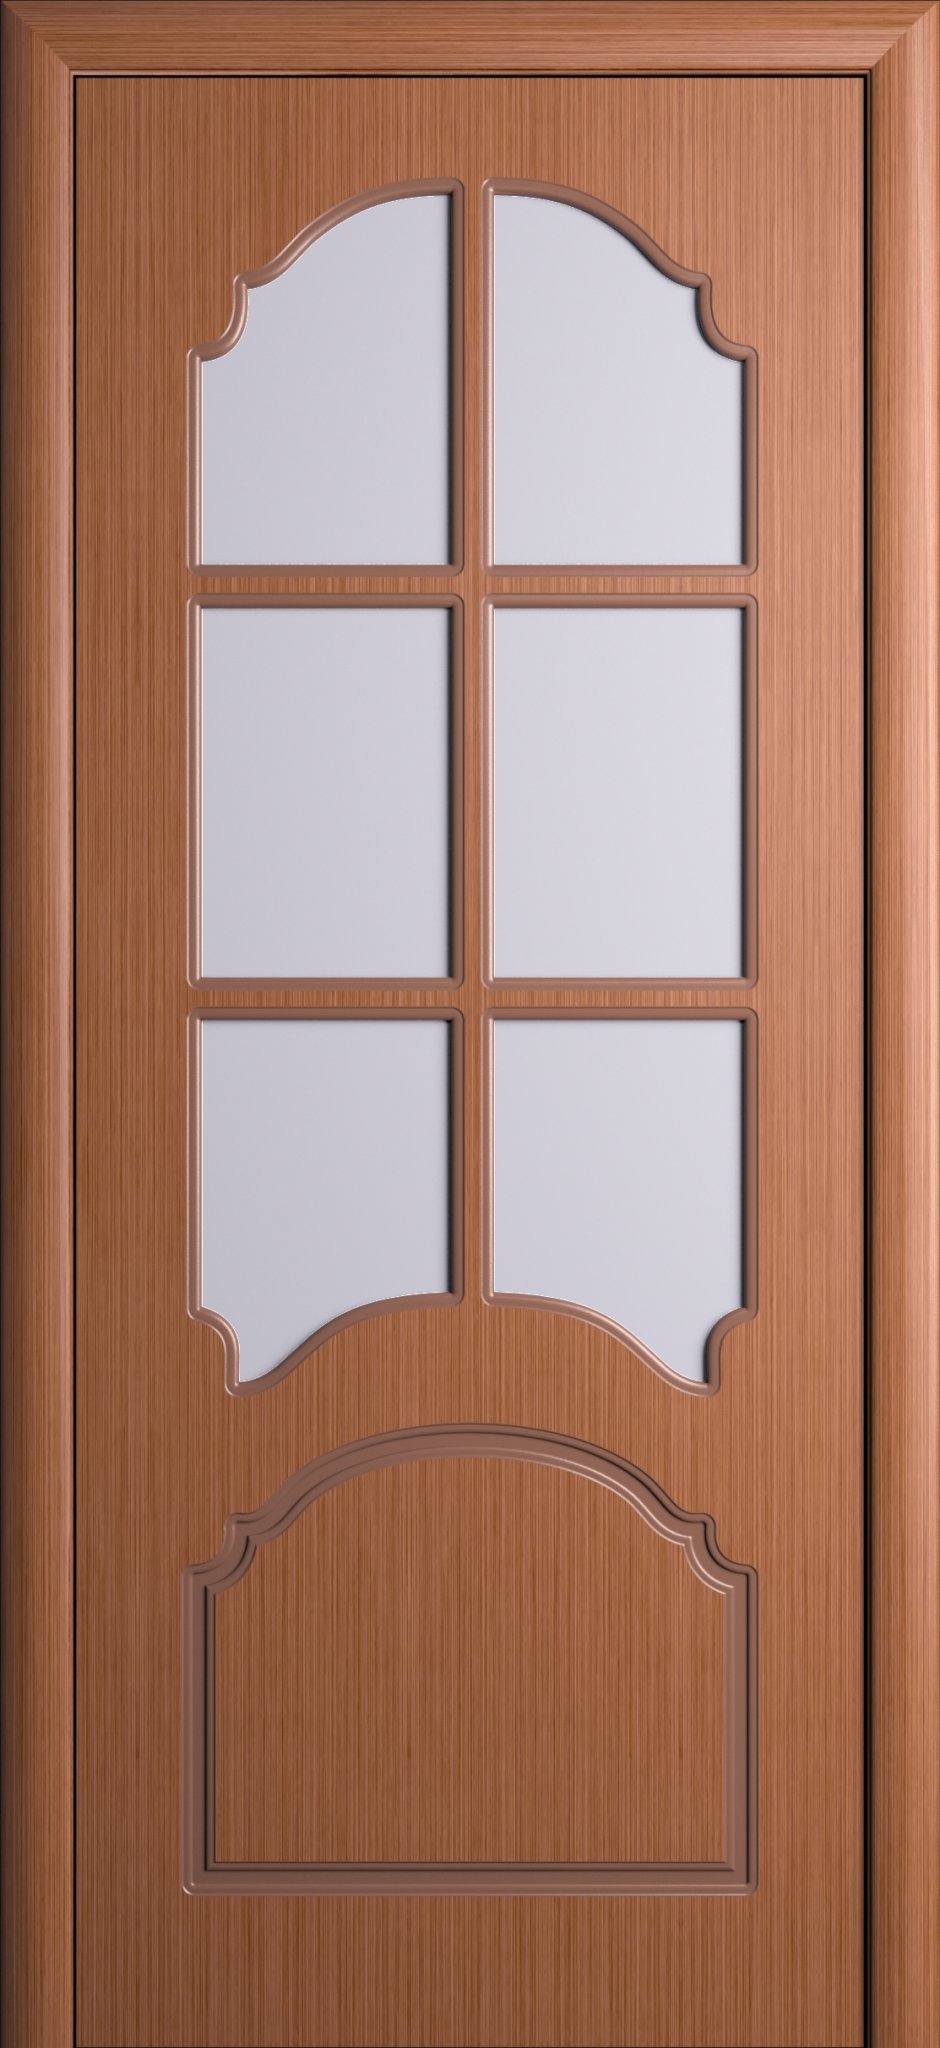 Двери межкомнатные Ампир орех 1900-600со стеклянными вставками